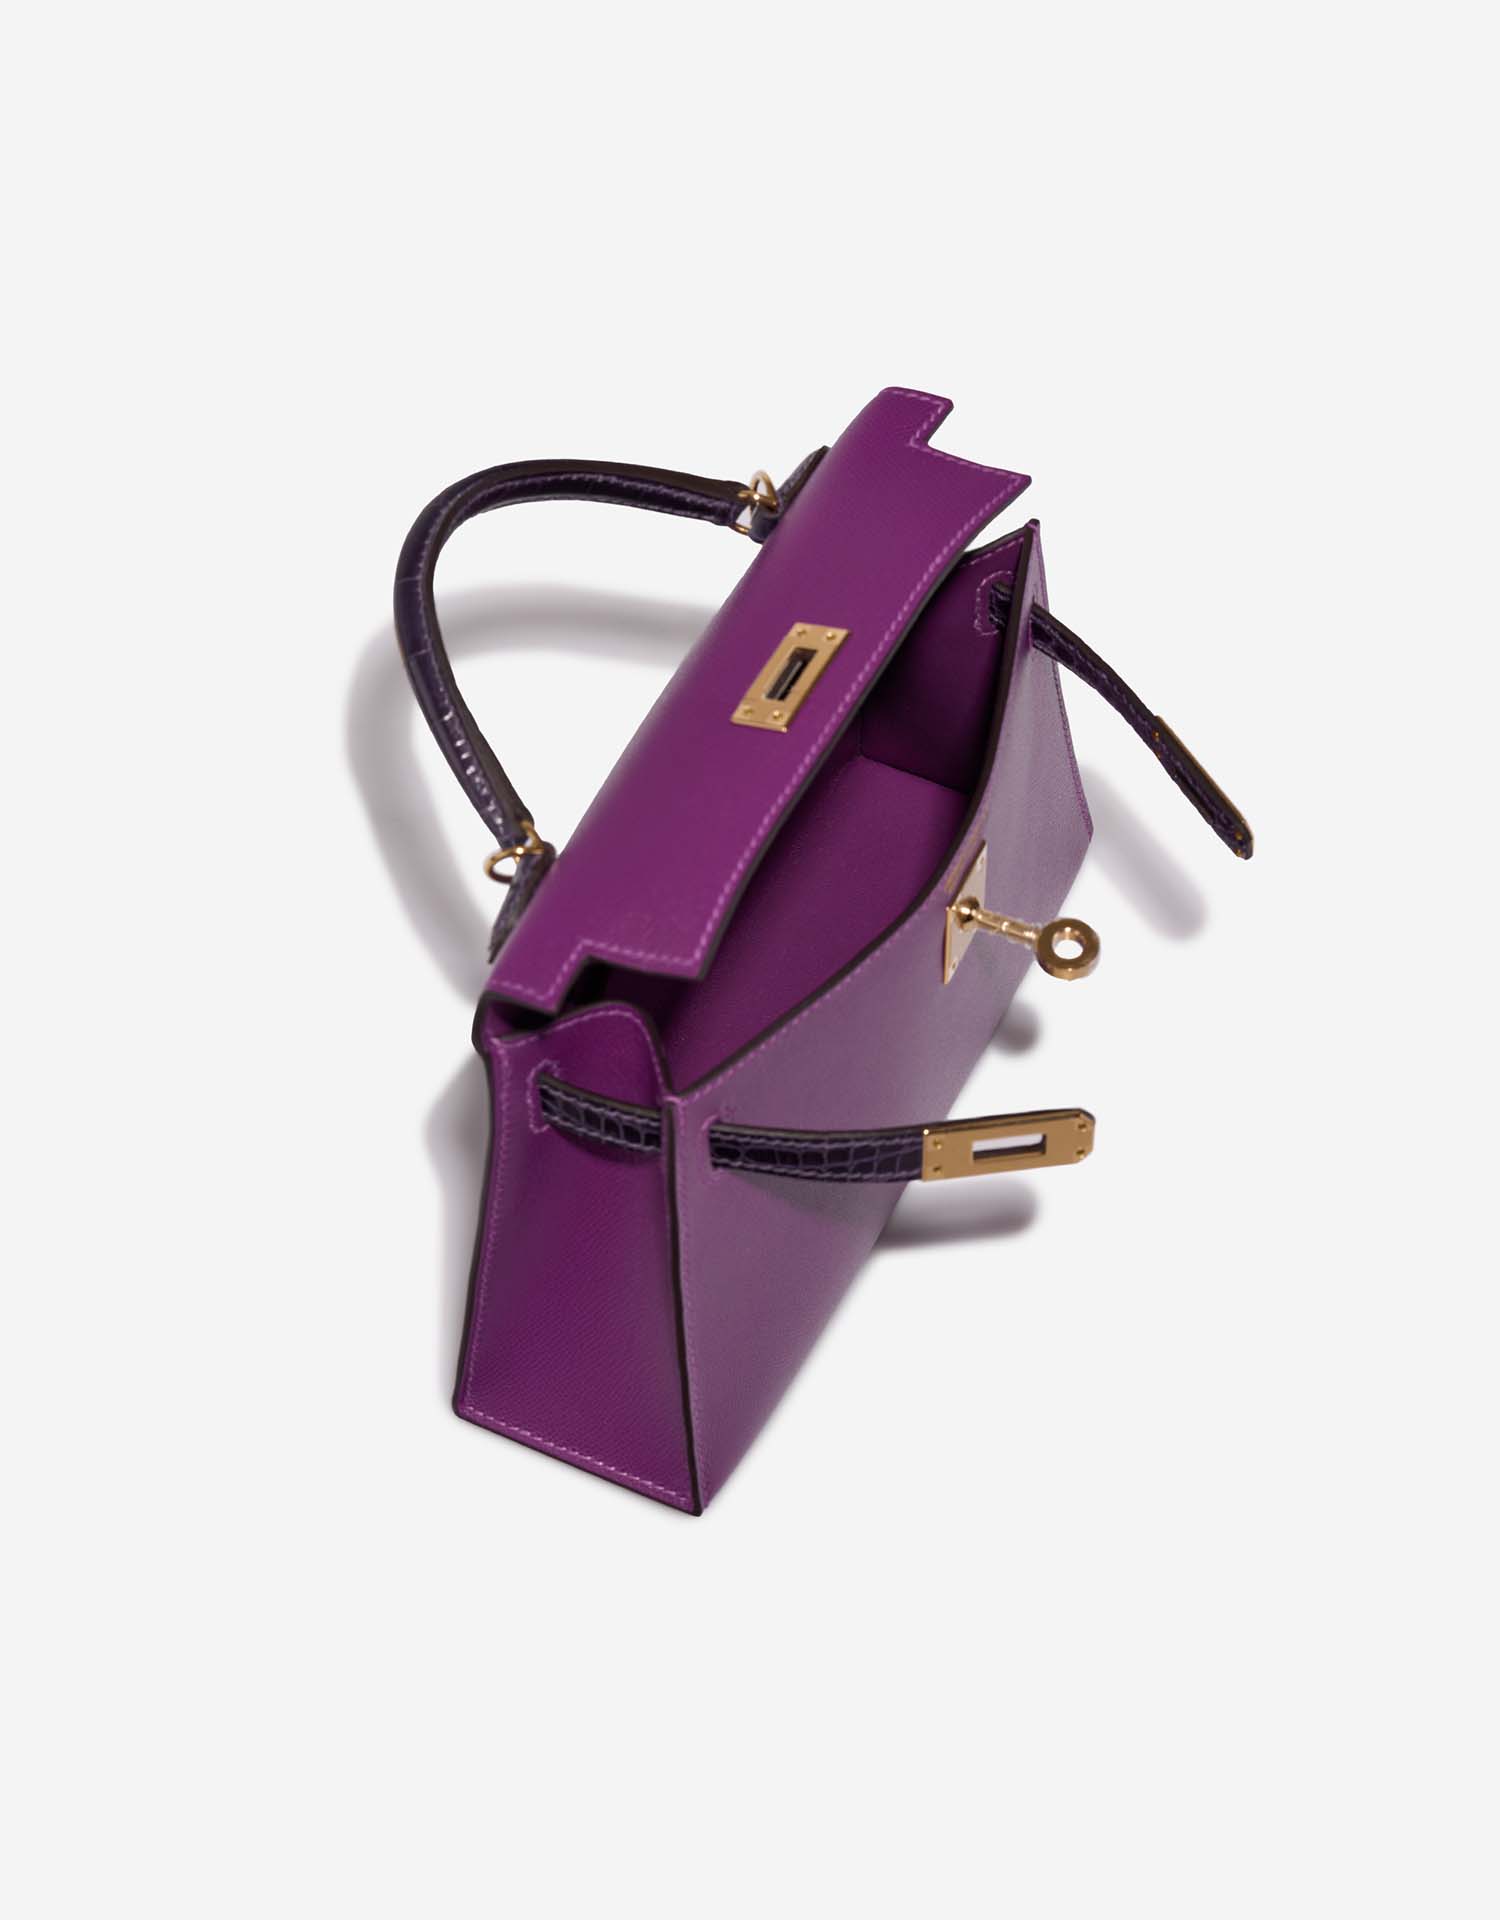 Hermès Kelly Mini Anemone-Amethyst Inside | Verkaufen Sie Ihre Designer-Tasche auf Saclab.com